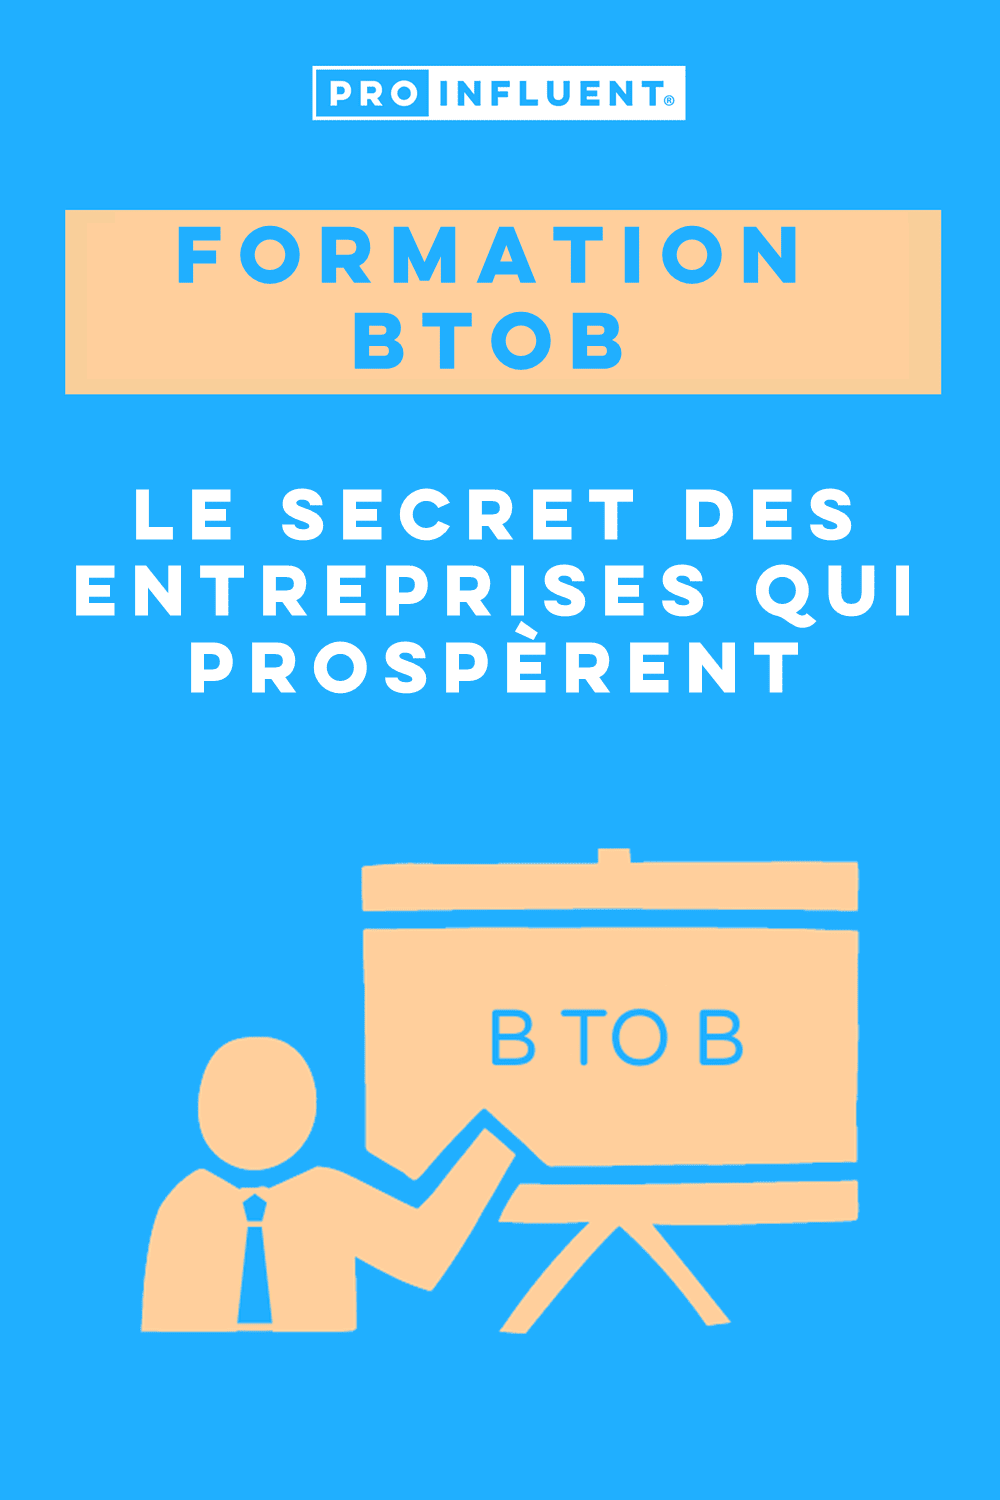 Formación B2B: el secreto de las empresas de éxito